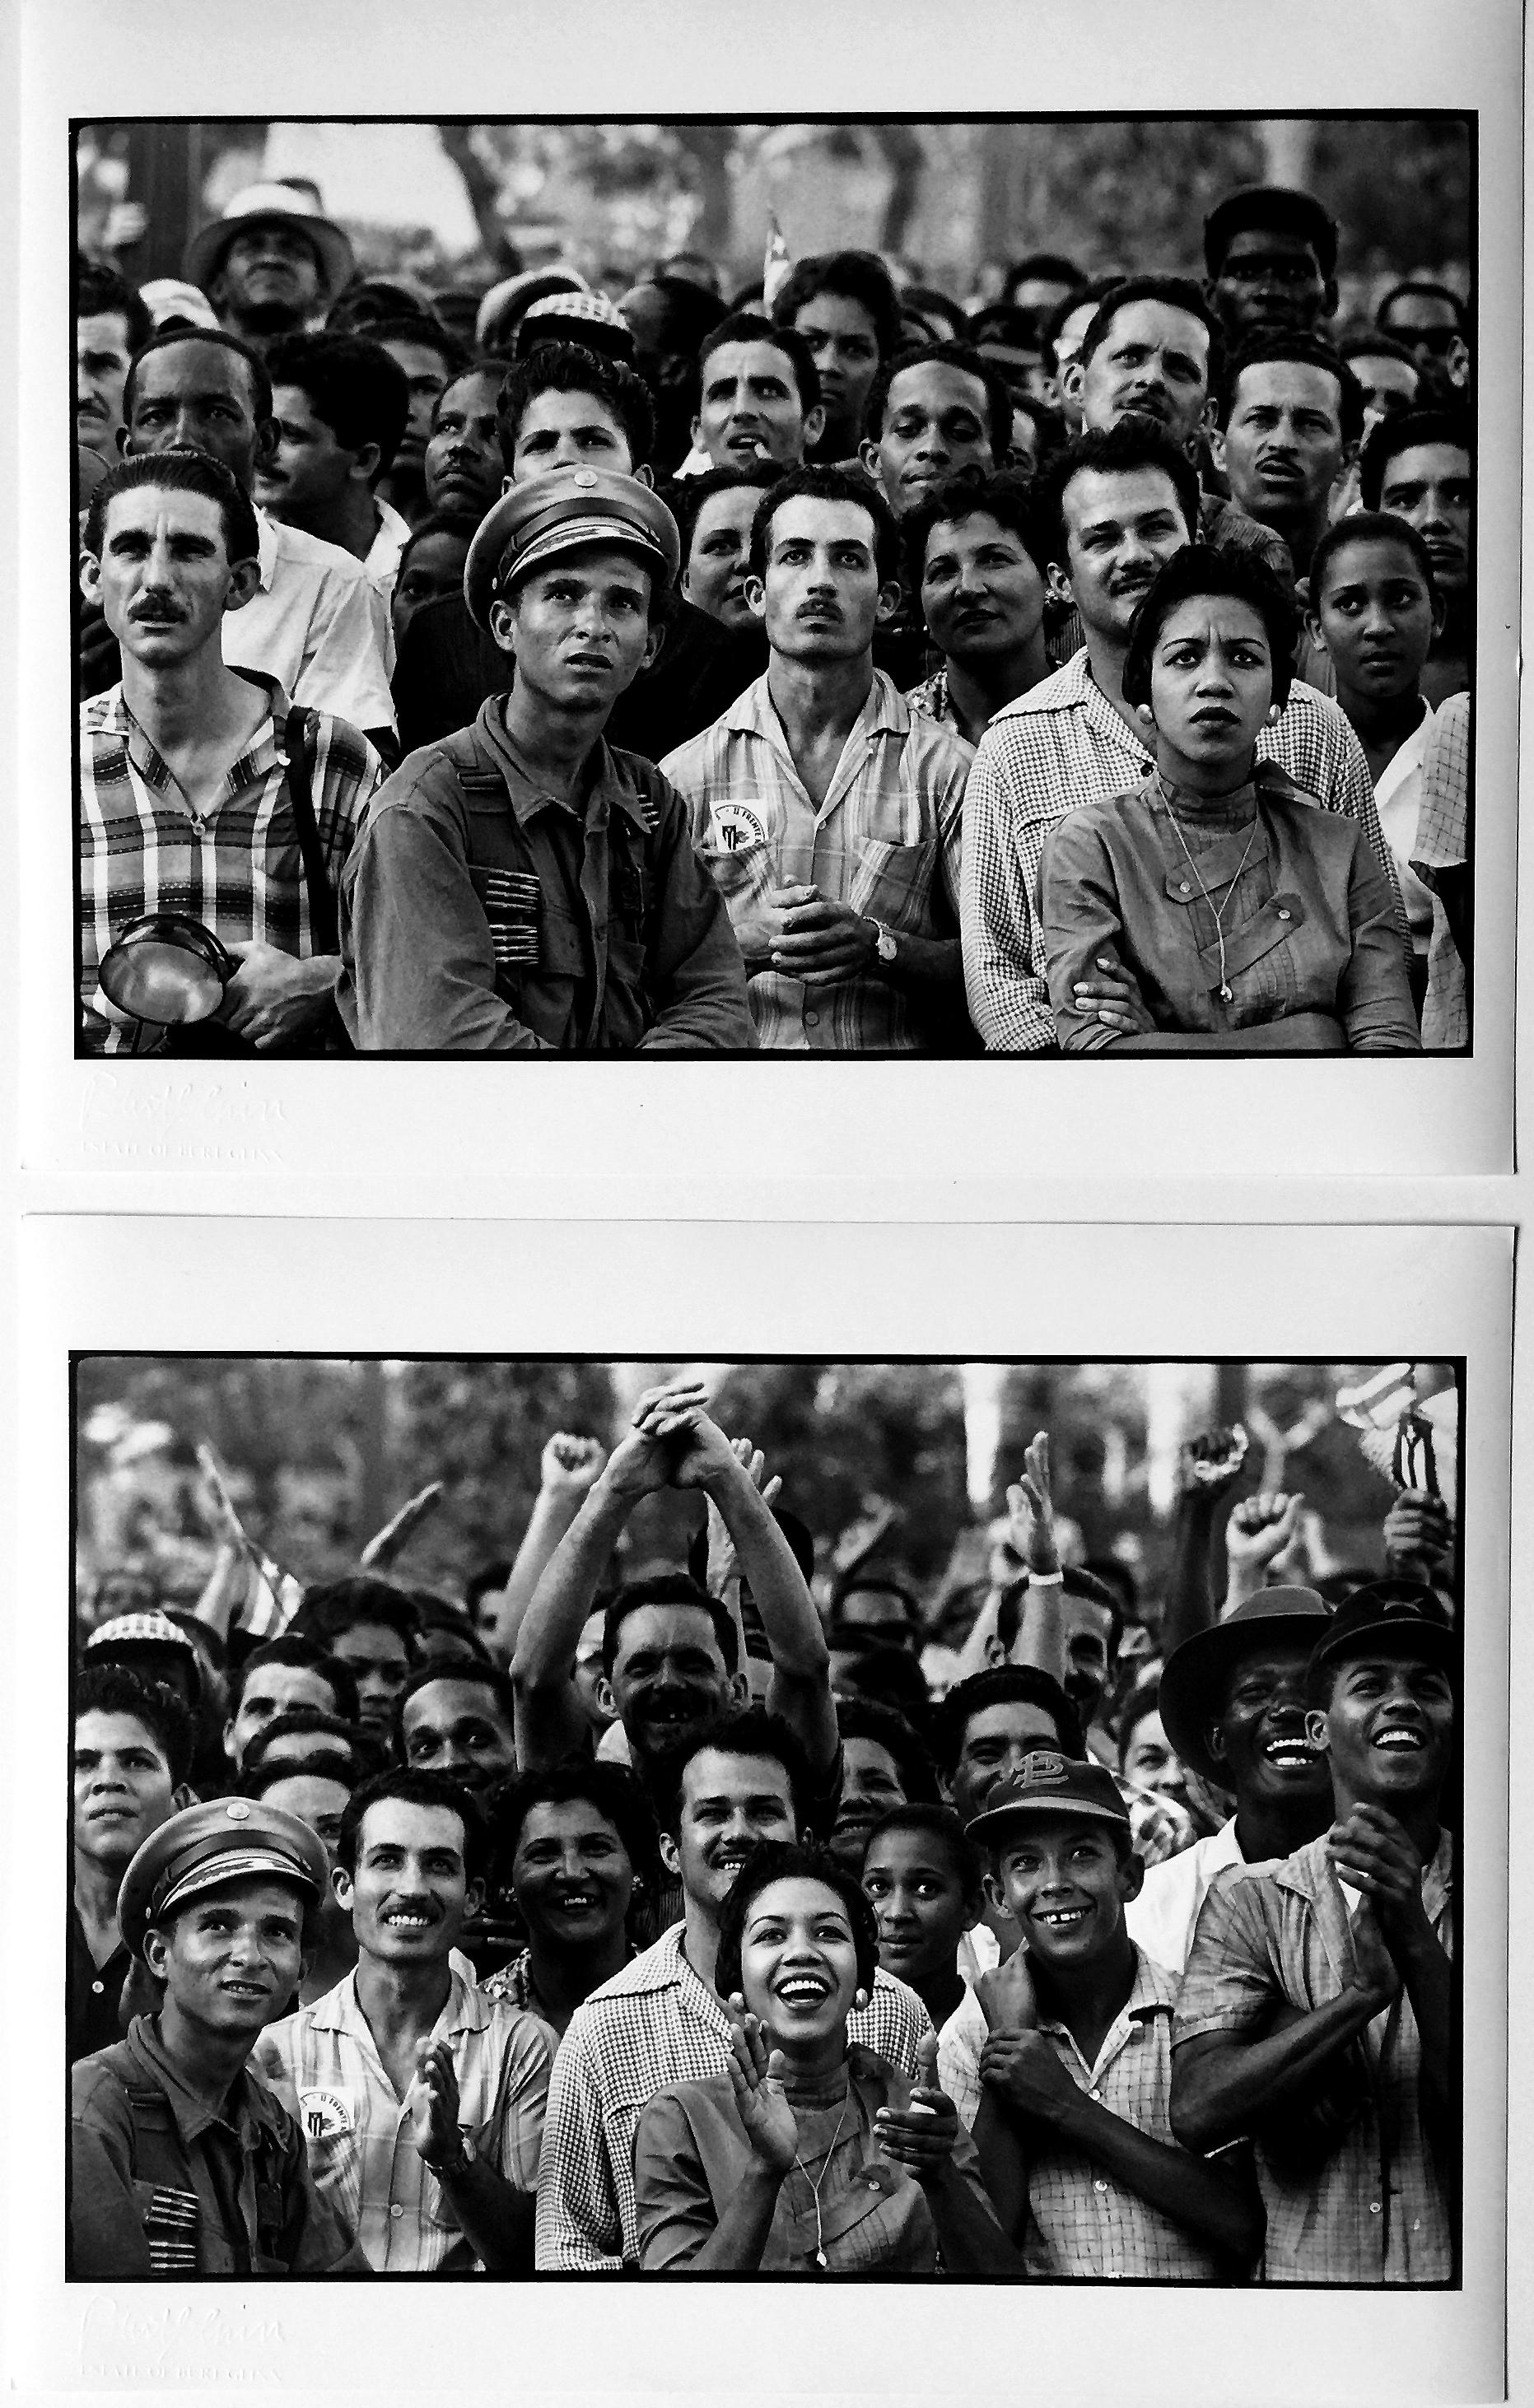 Waiting for Fidel Castro, Havanna, Fotografien von Kuba, 1950er Jahre (Schwarz), Black and White Photograph, von Burt Glinn